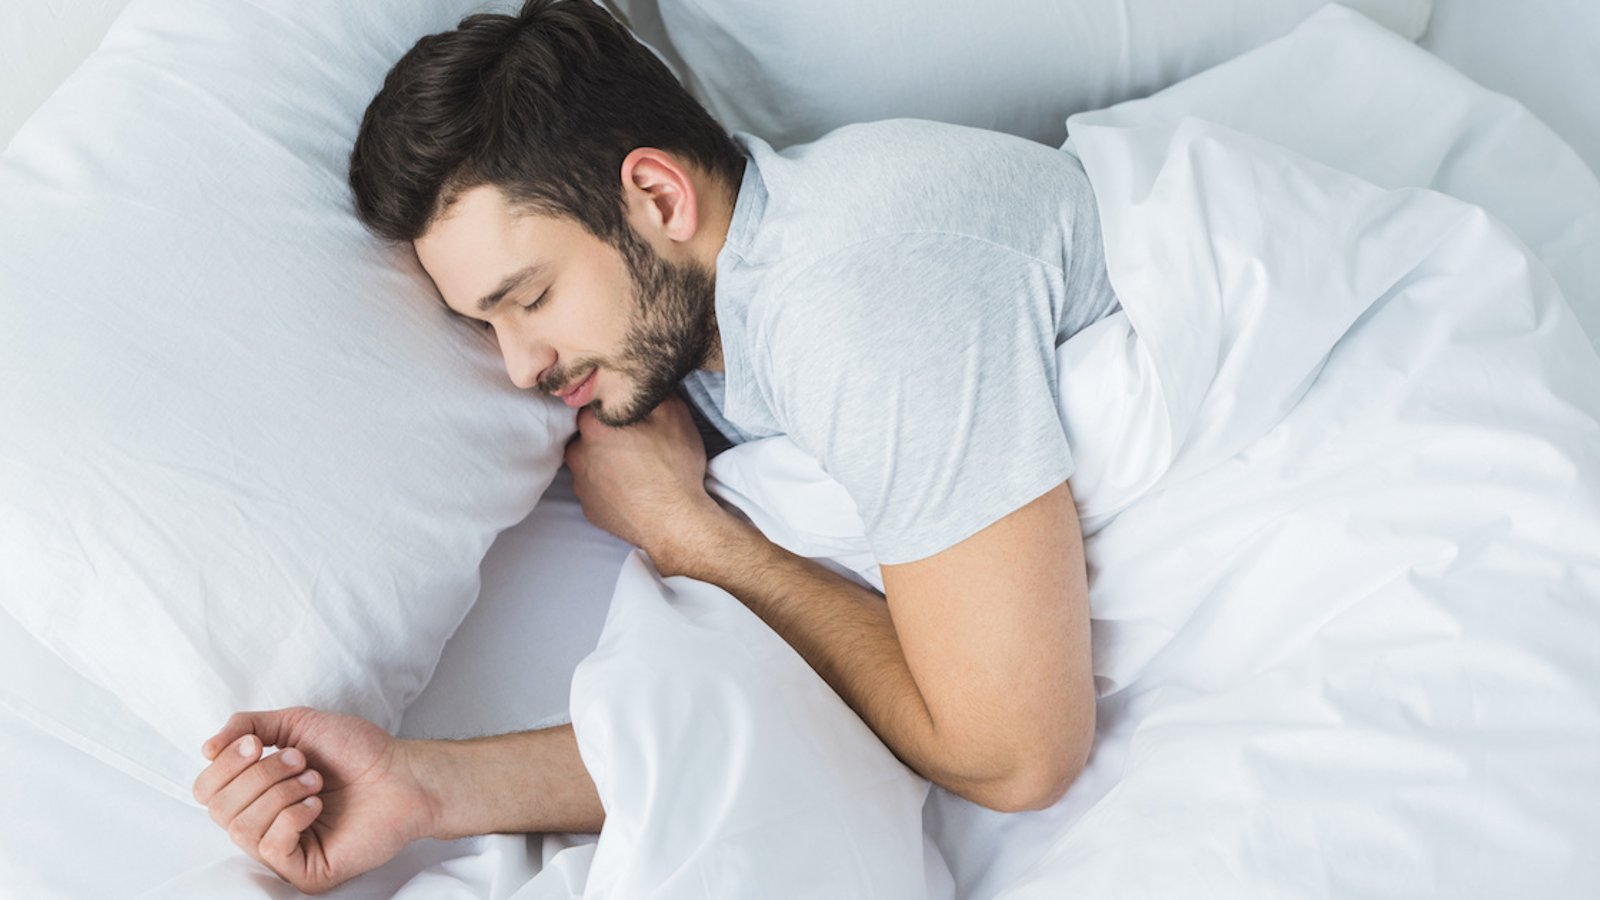 Découvrez en quoi votre position pour dormir influence votre santé